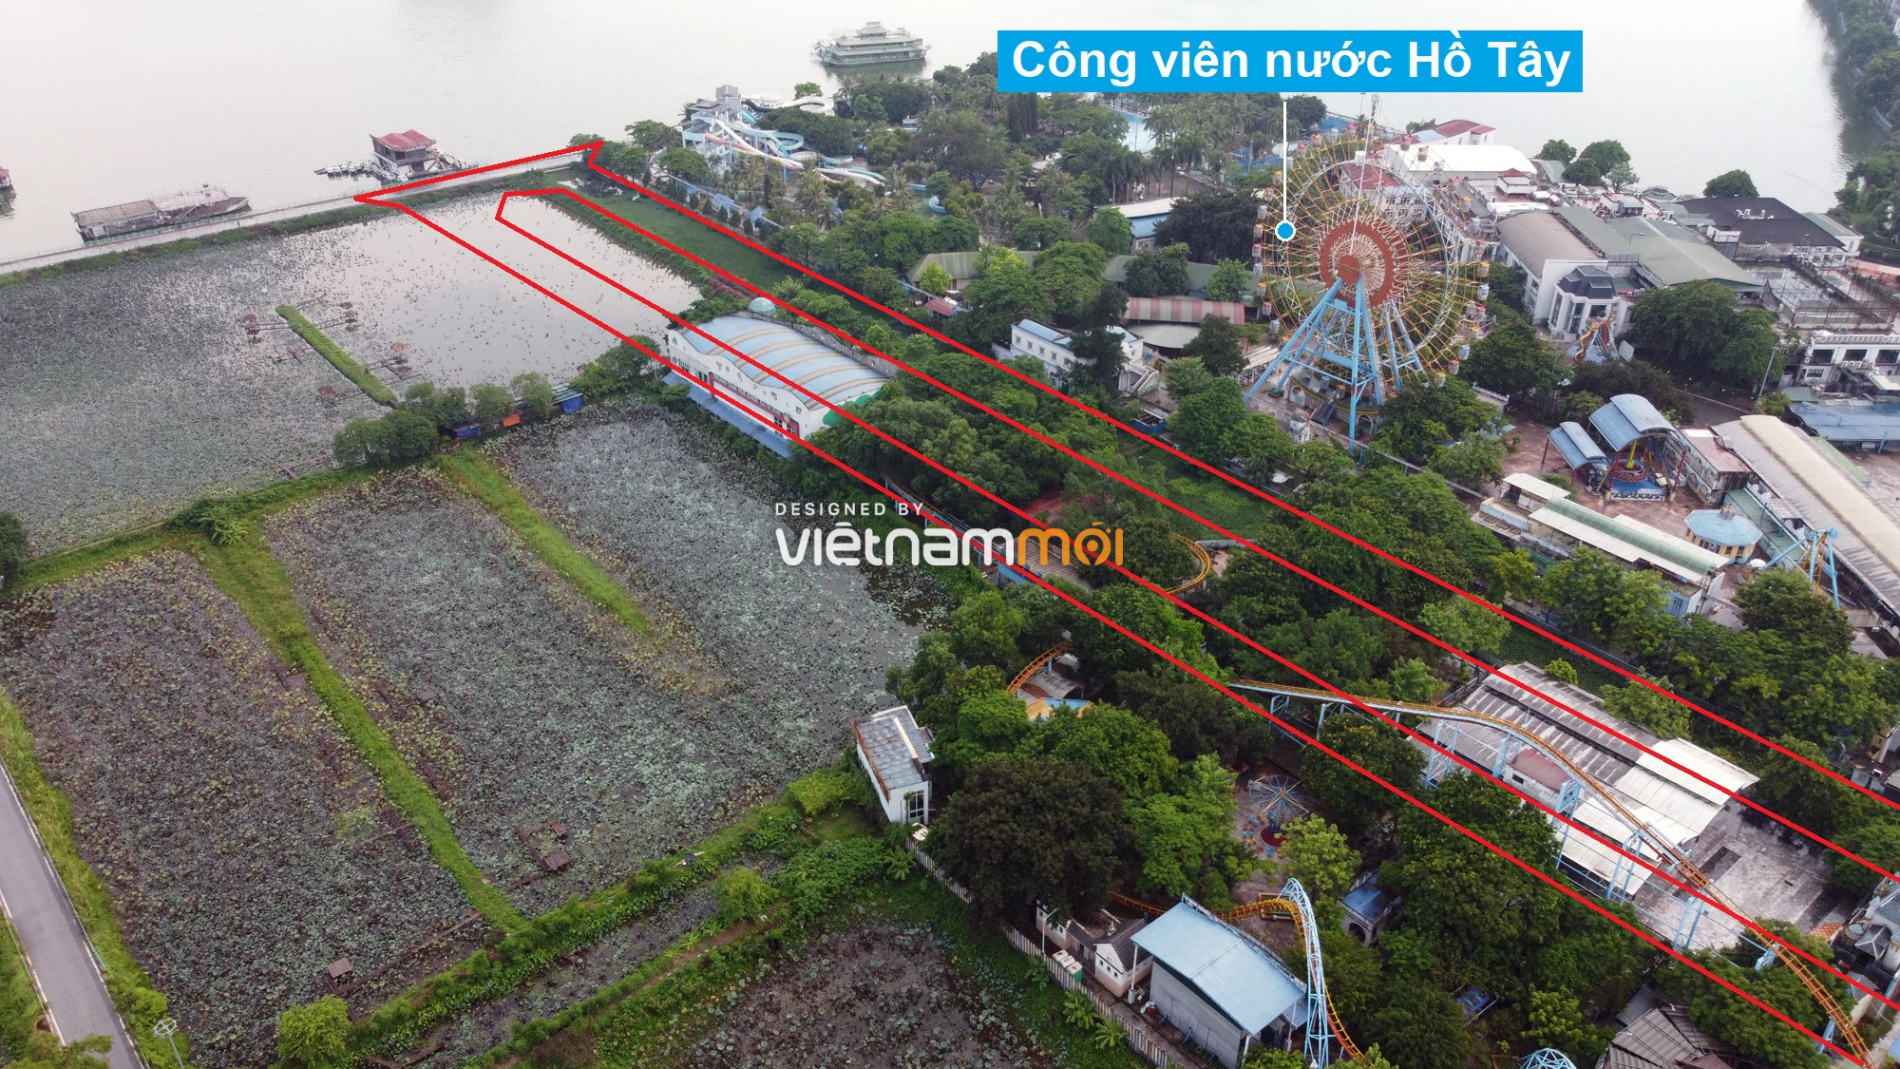 Những khu đất sắp thu hồi để mở đường ở quận Tây Hồ, Hà Nội (phần 2) - Ảnh 11.